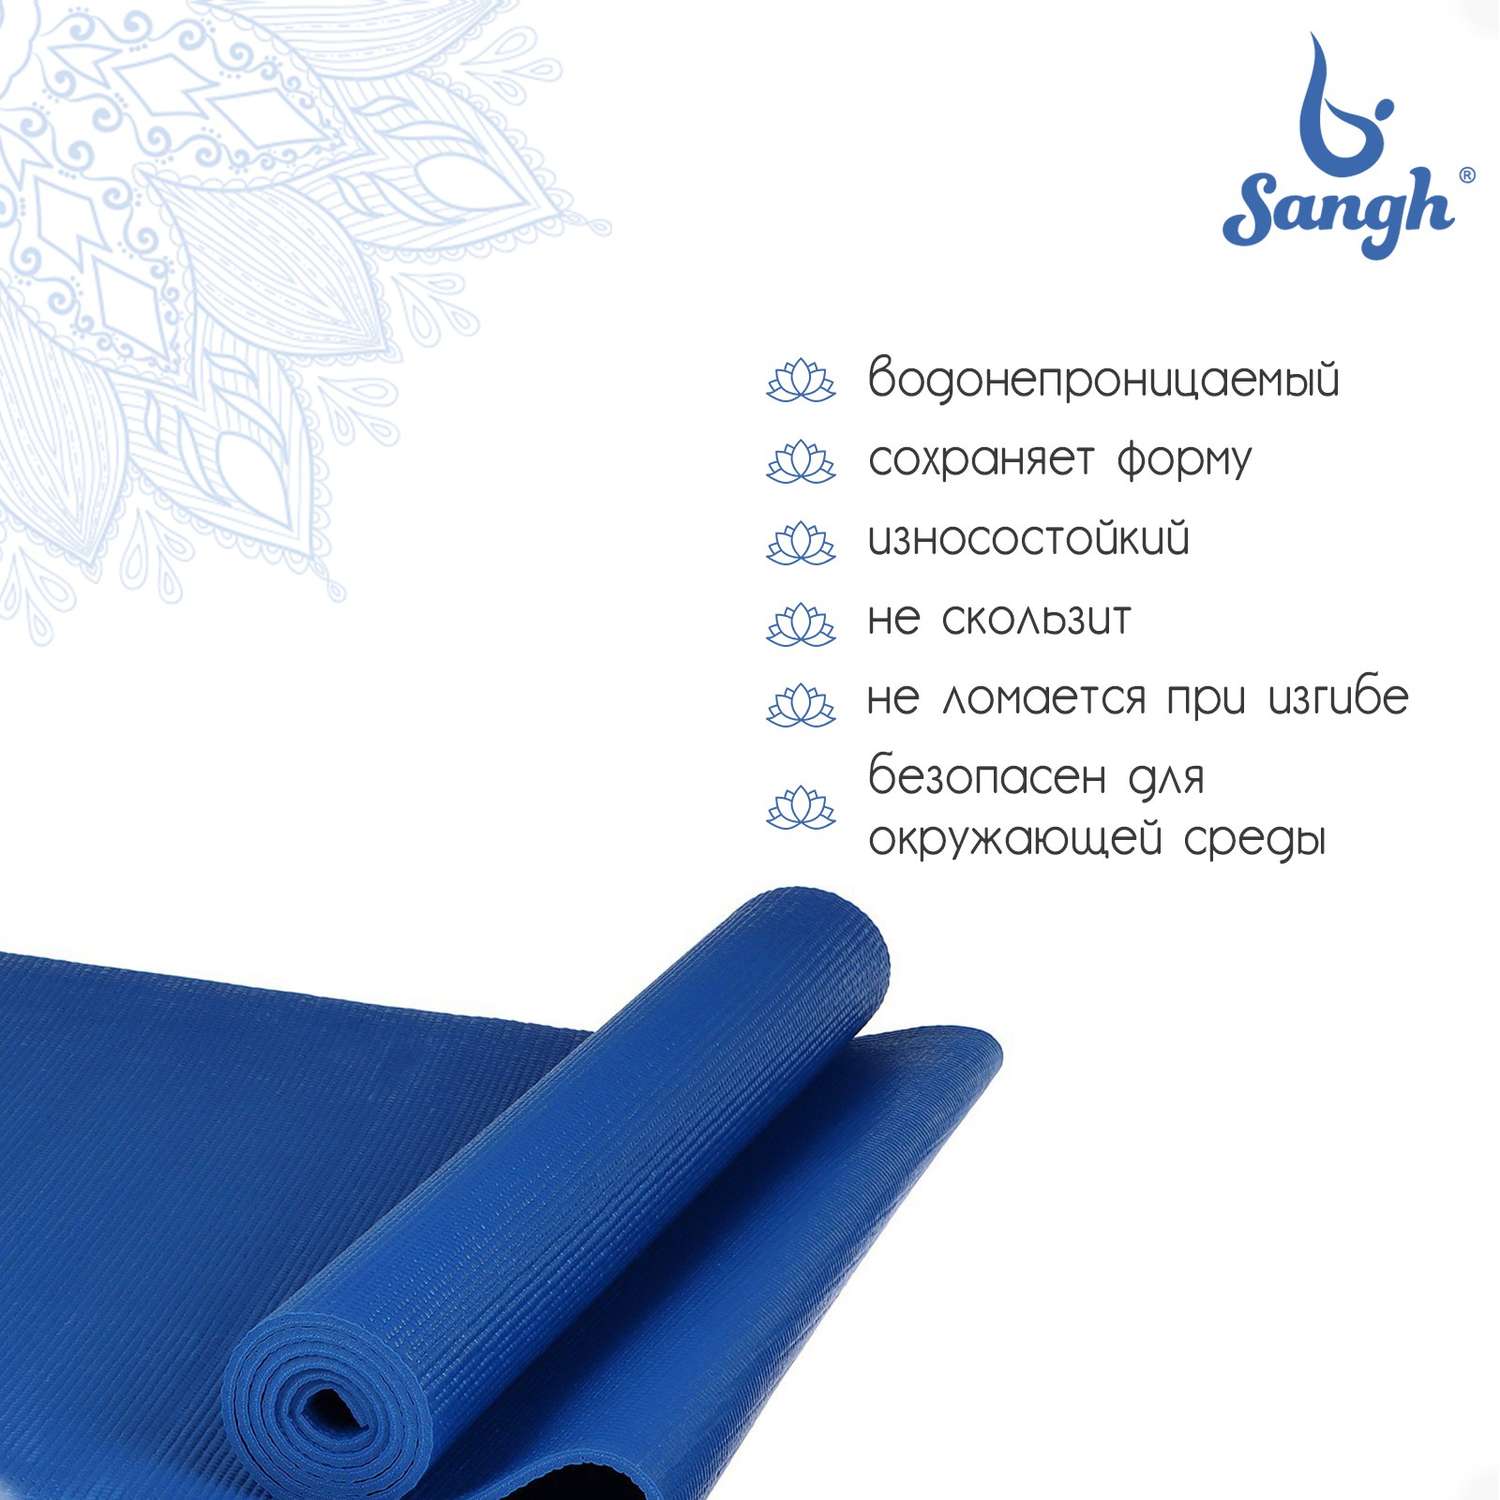 Коврик Sangh 173 × 61 × 0.6 см. цвет синий - фото 2